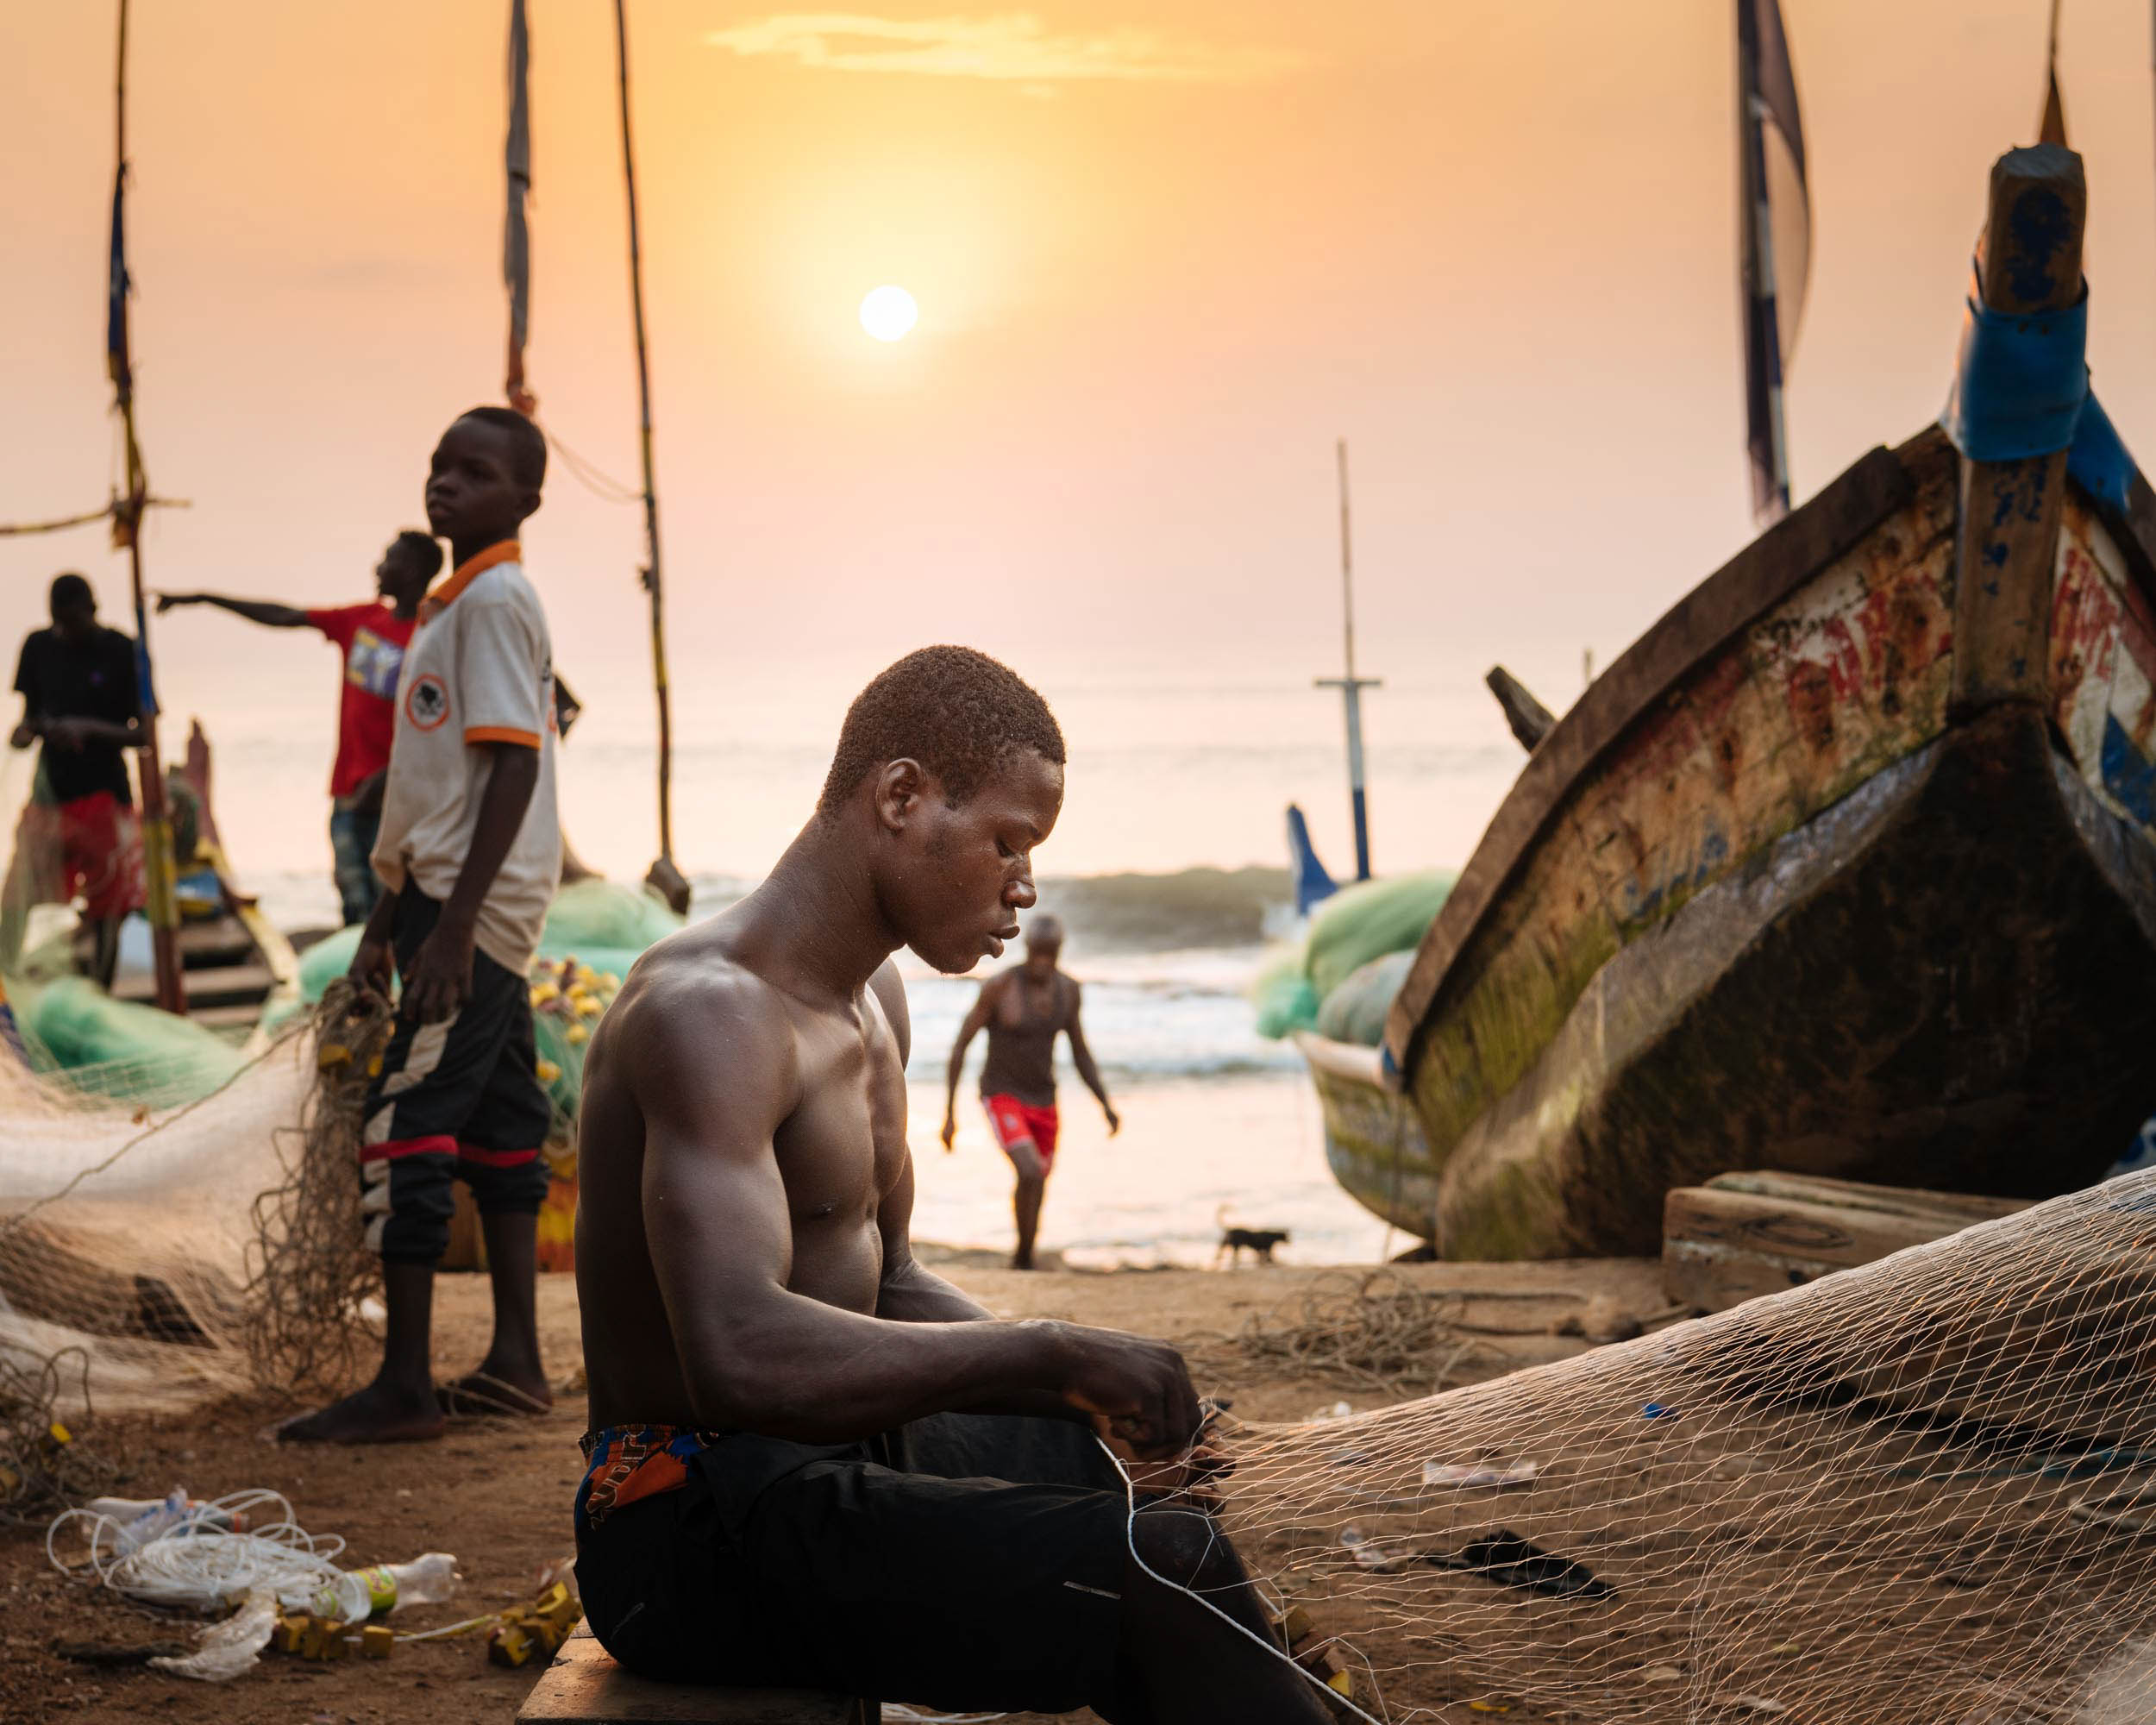 sunrise-fisherman-fixing-nets-dawn-cape-coast-ghana-africa